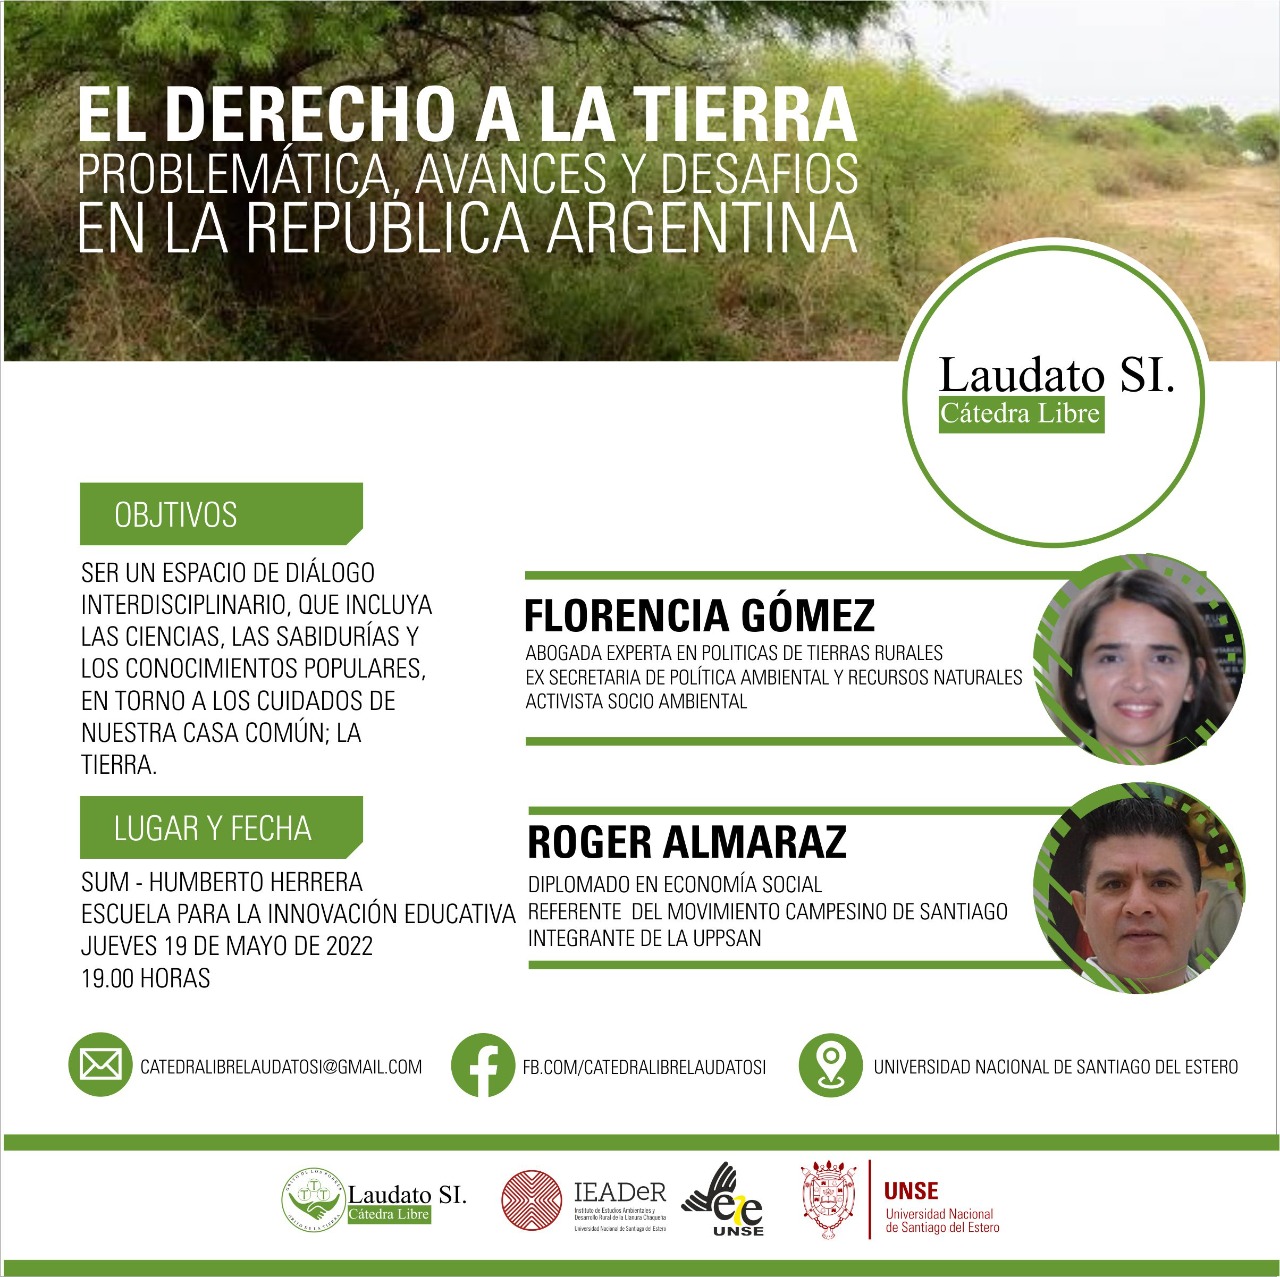 Cátedra Laudato Si: Encuentro  de diálogo “El derecho a la tierra”. Problemática, avances y desafíos en la República Argentina